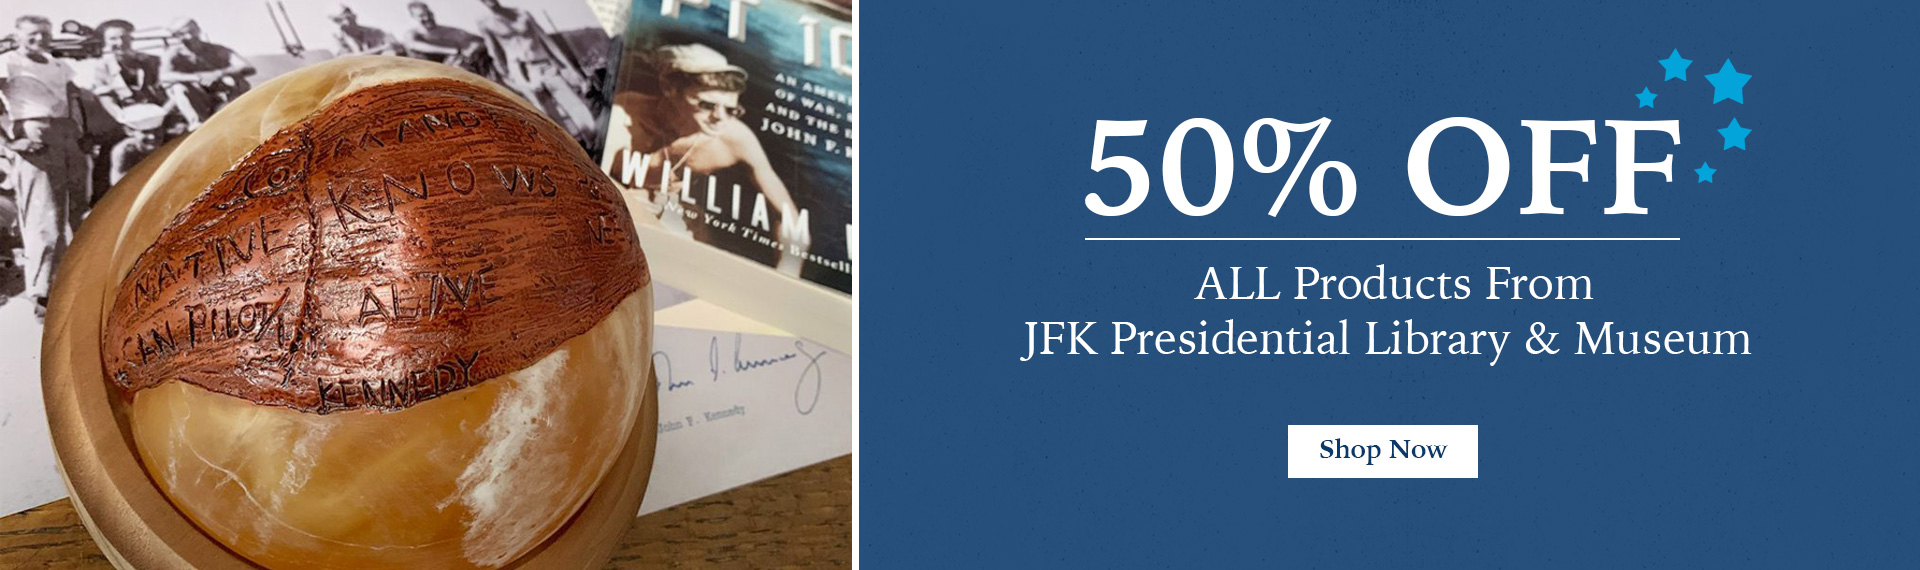 JFK Library Souvenirs 50% off Sale